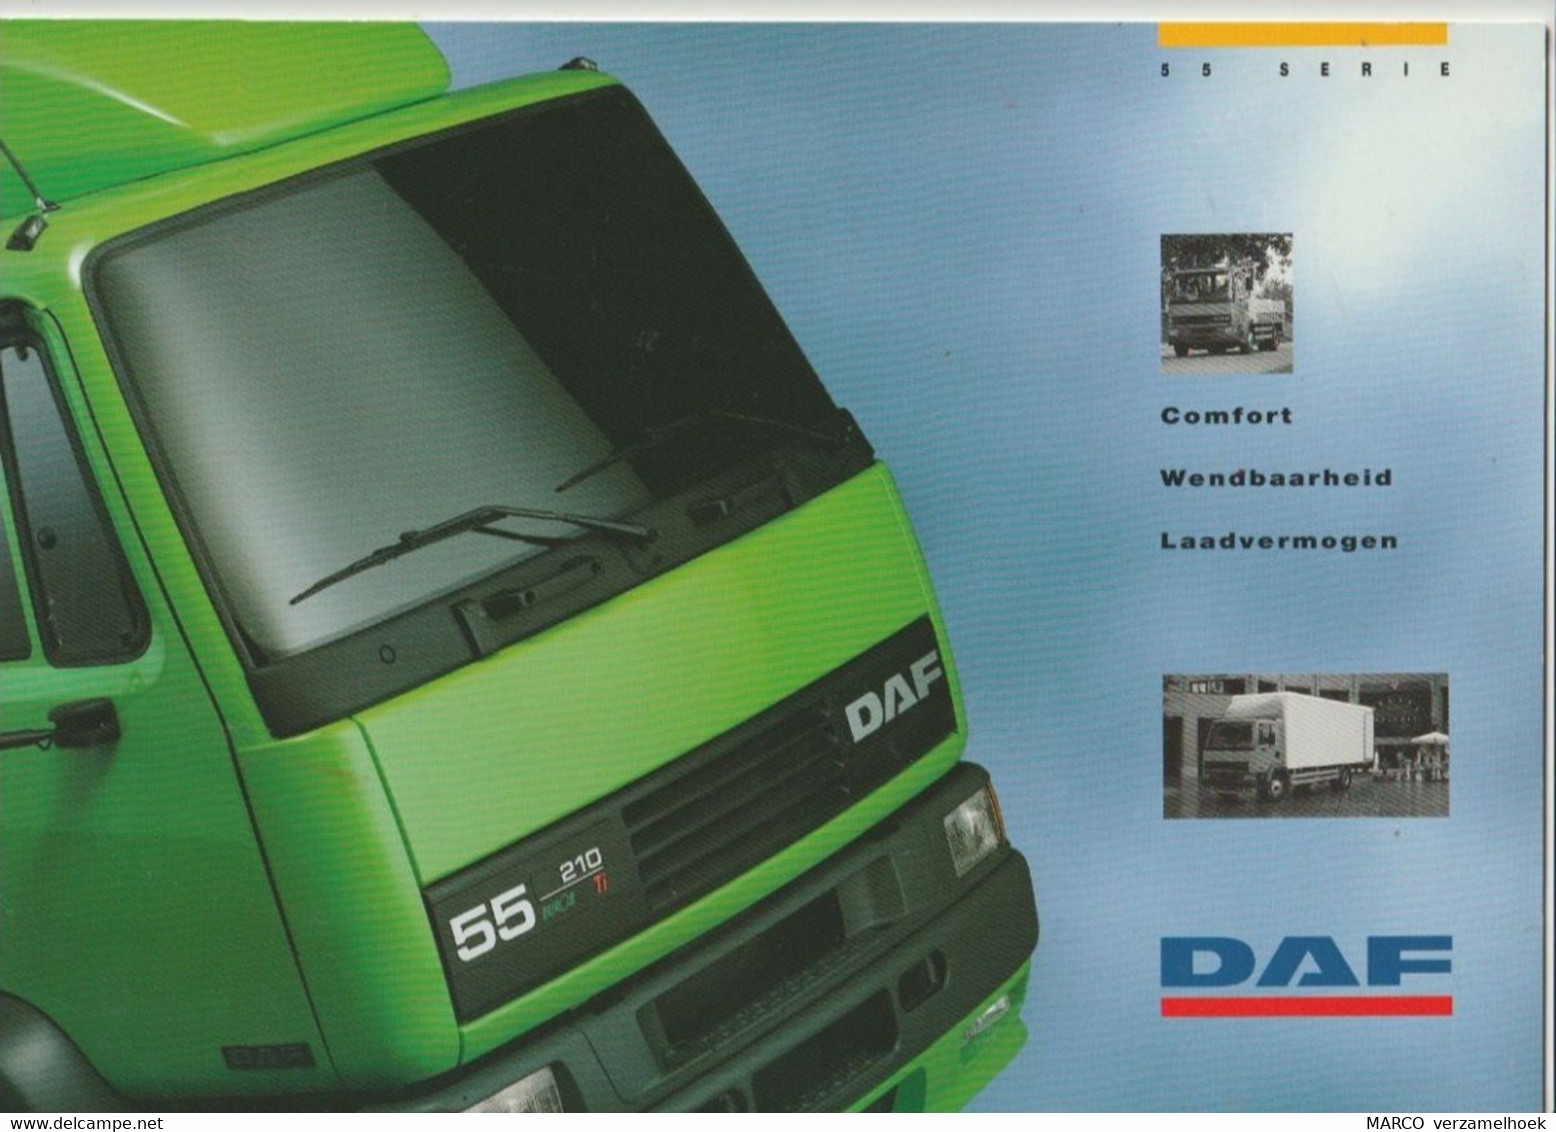 Brochure-leaflet DAF Trucks Eindhoven DAF 55 Serie - Camions